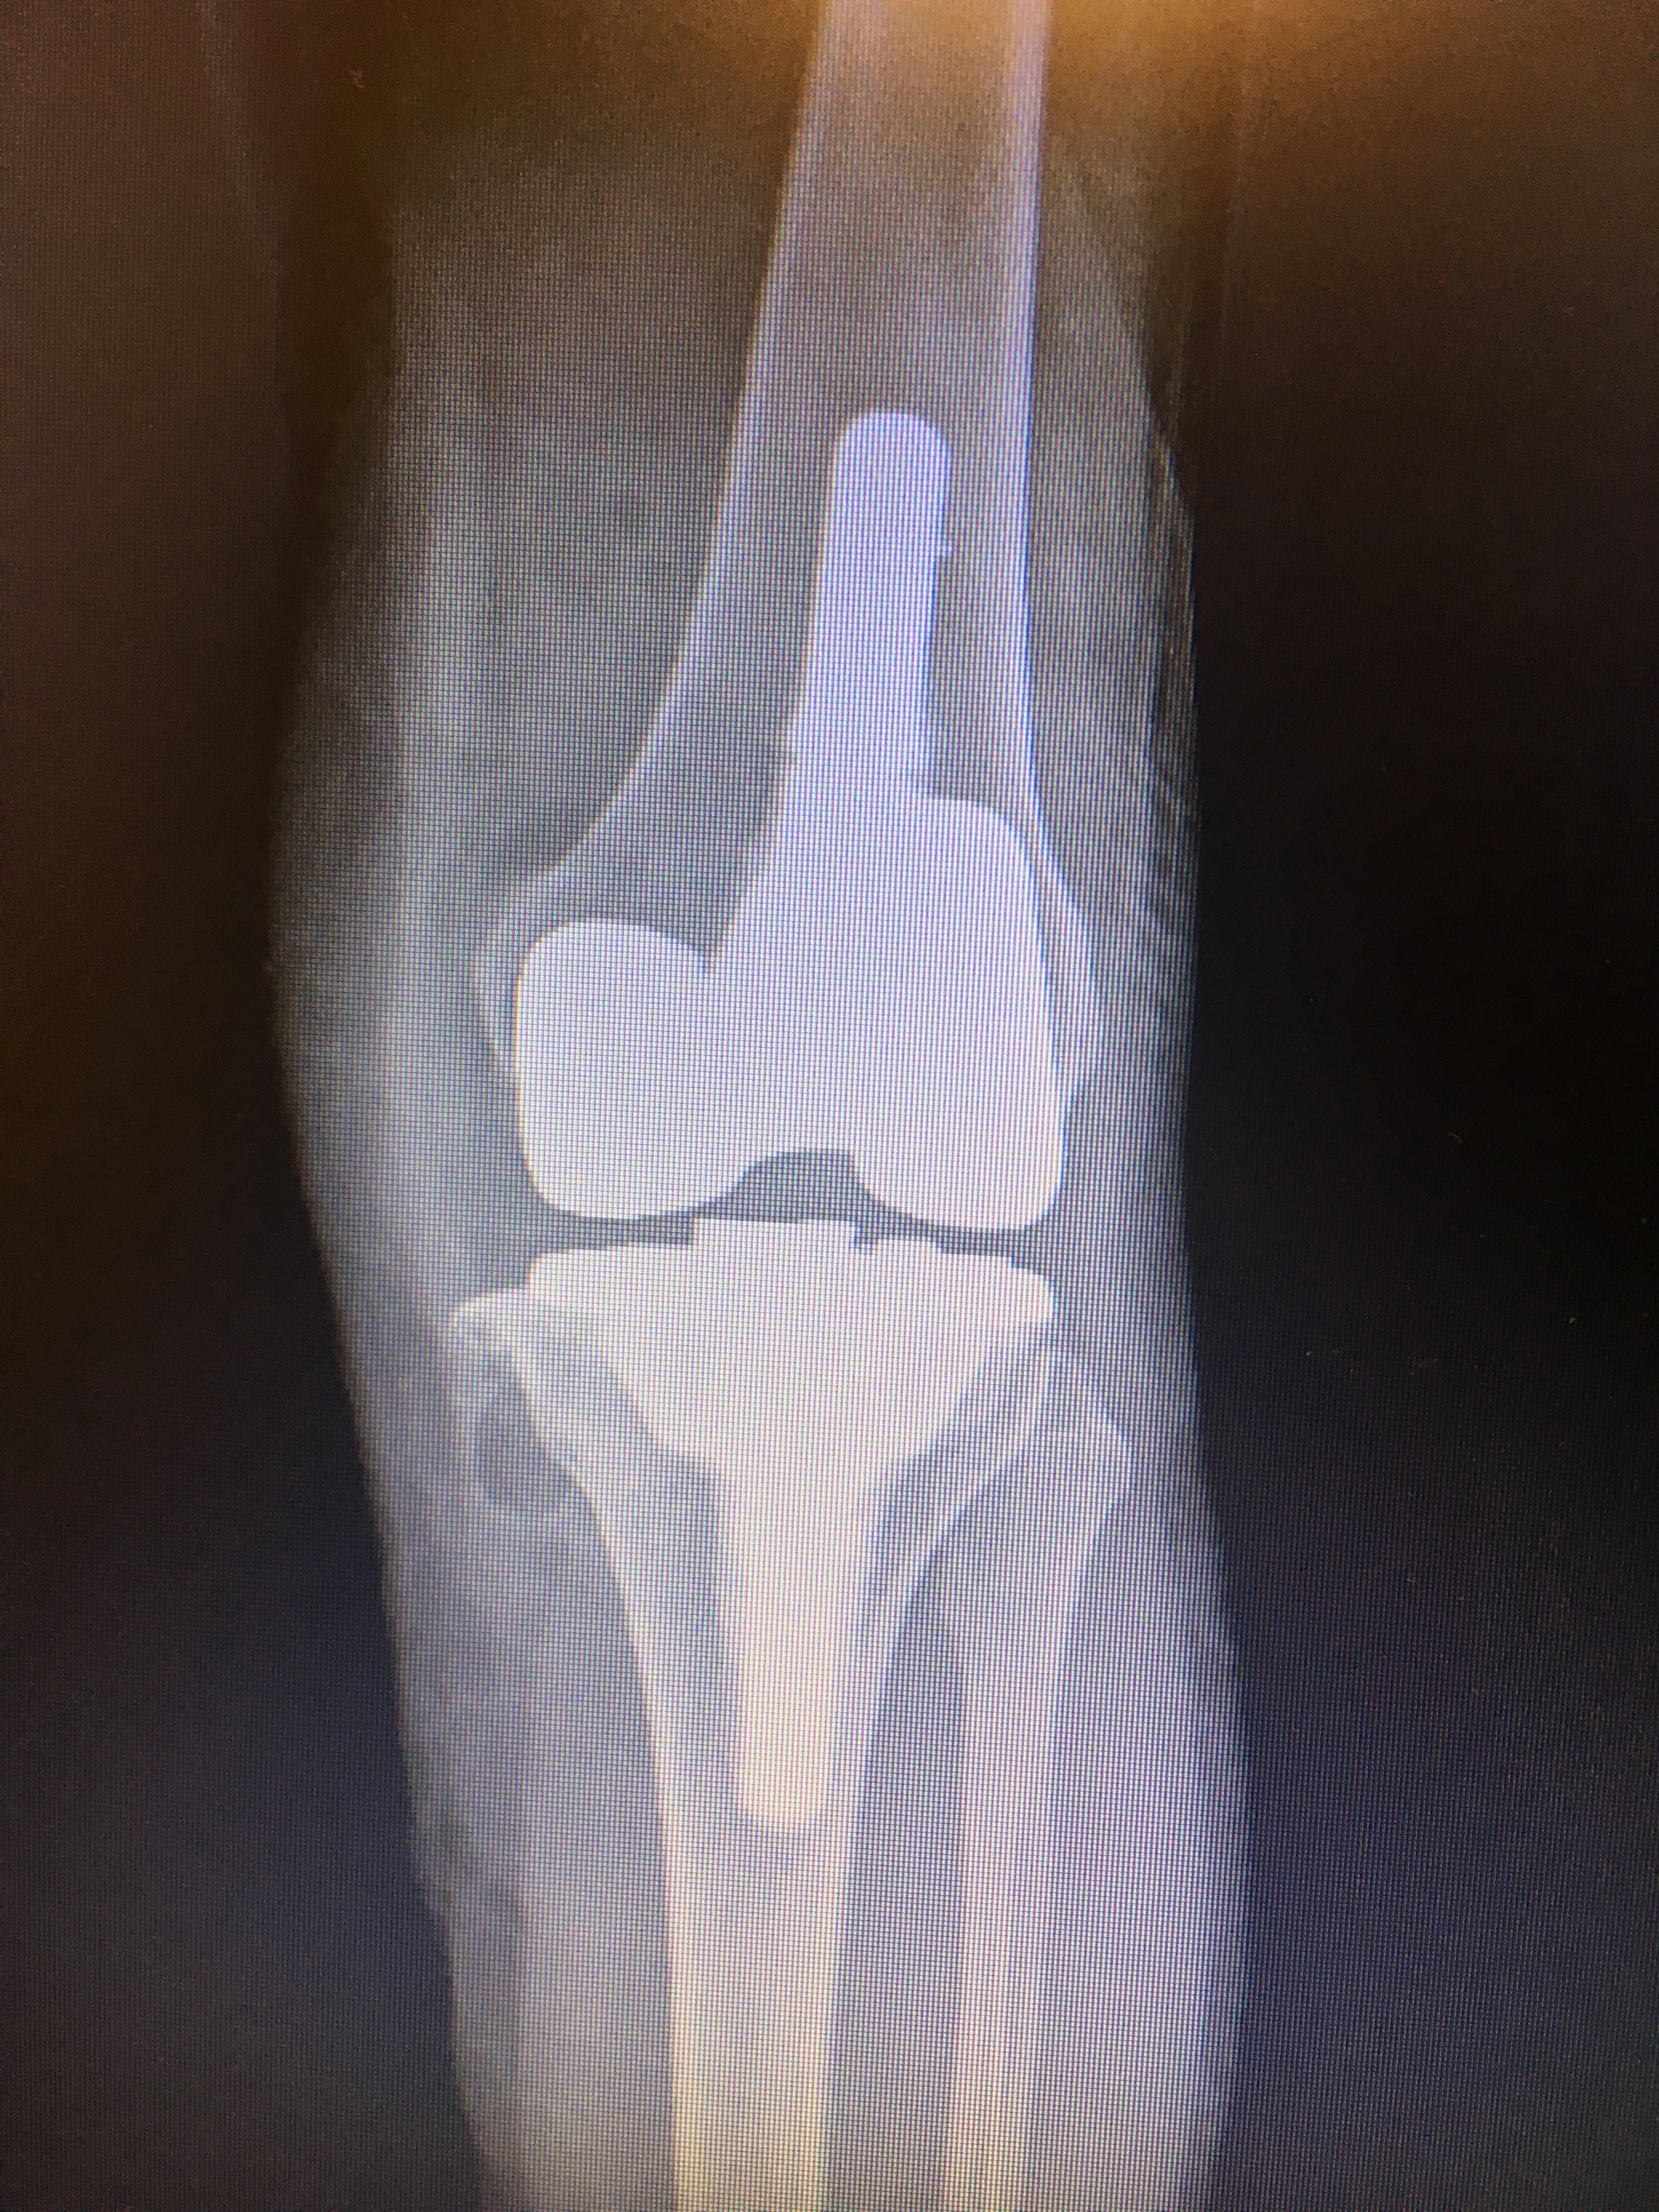 protesi totale al ginocchio